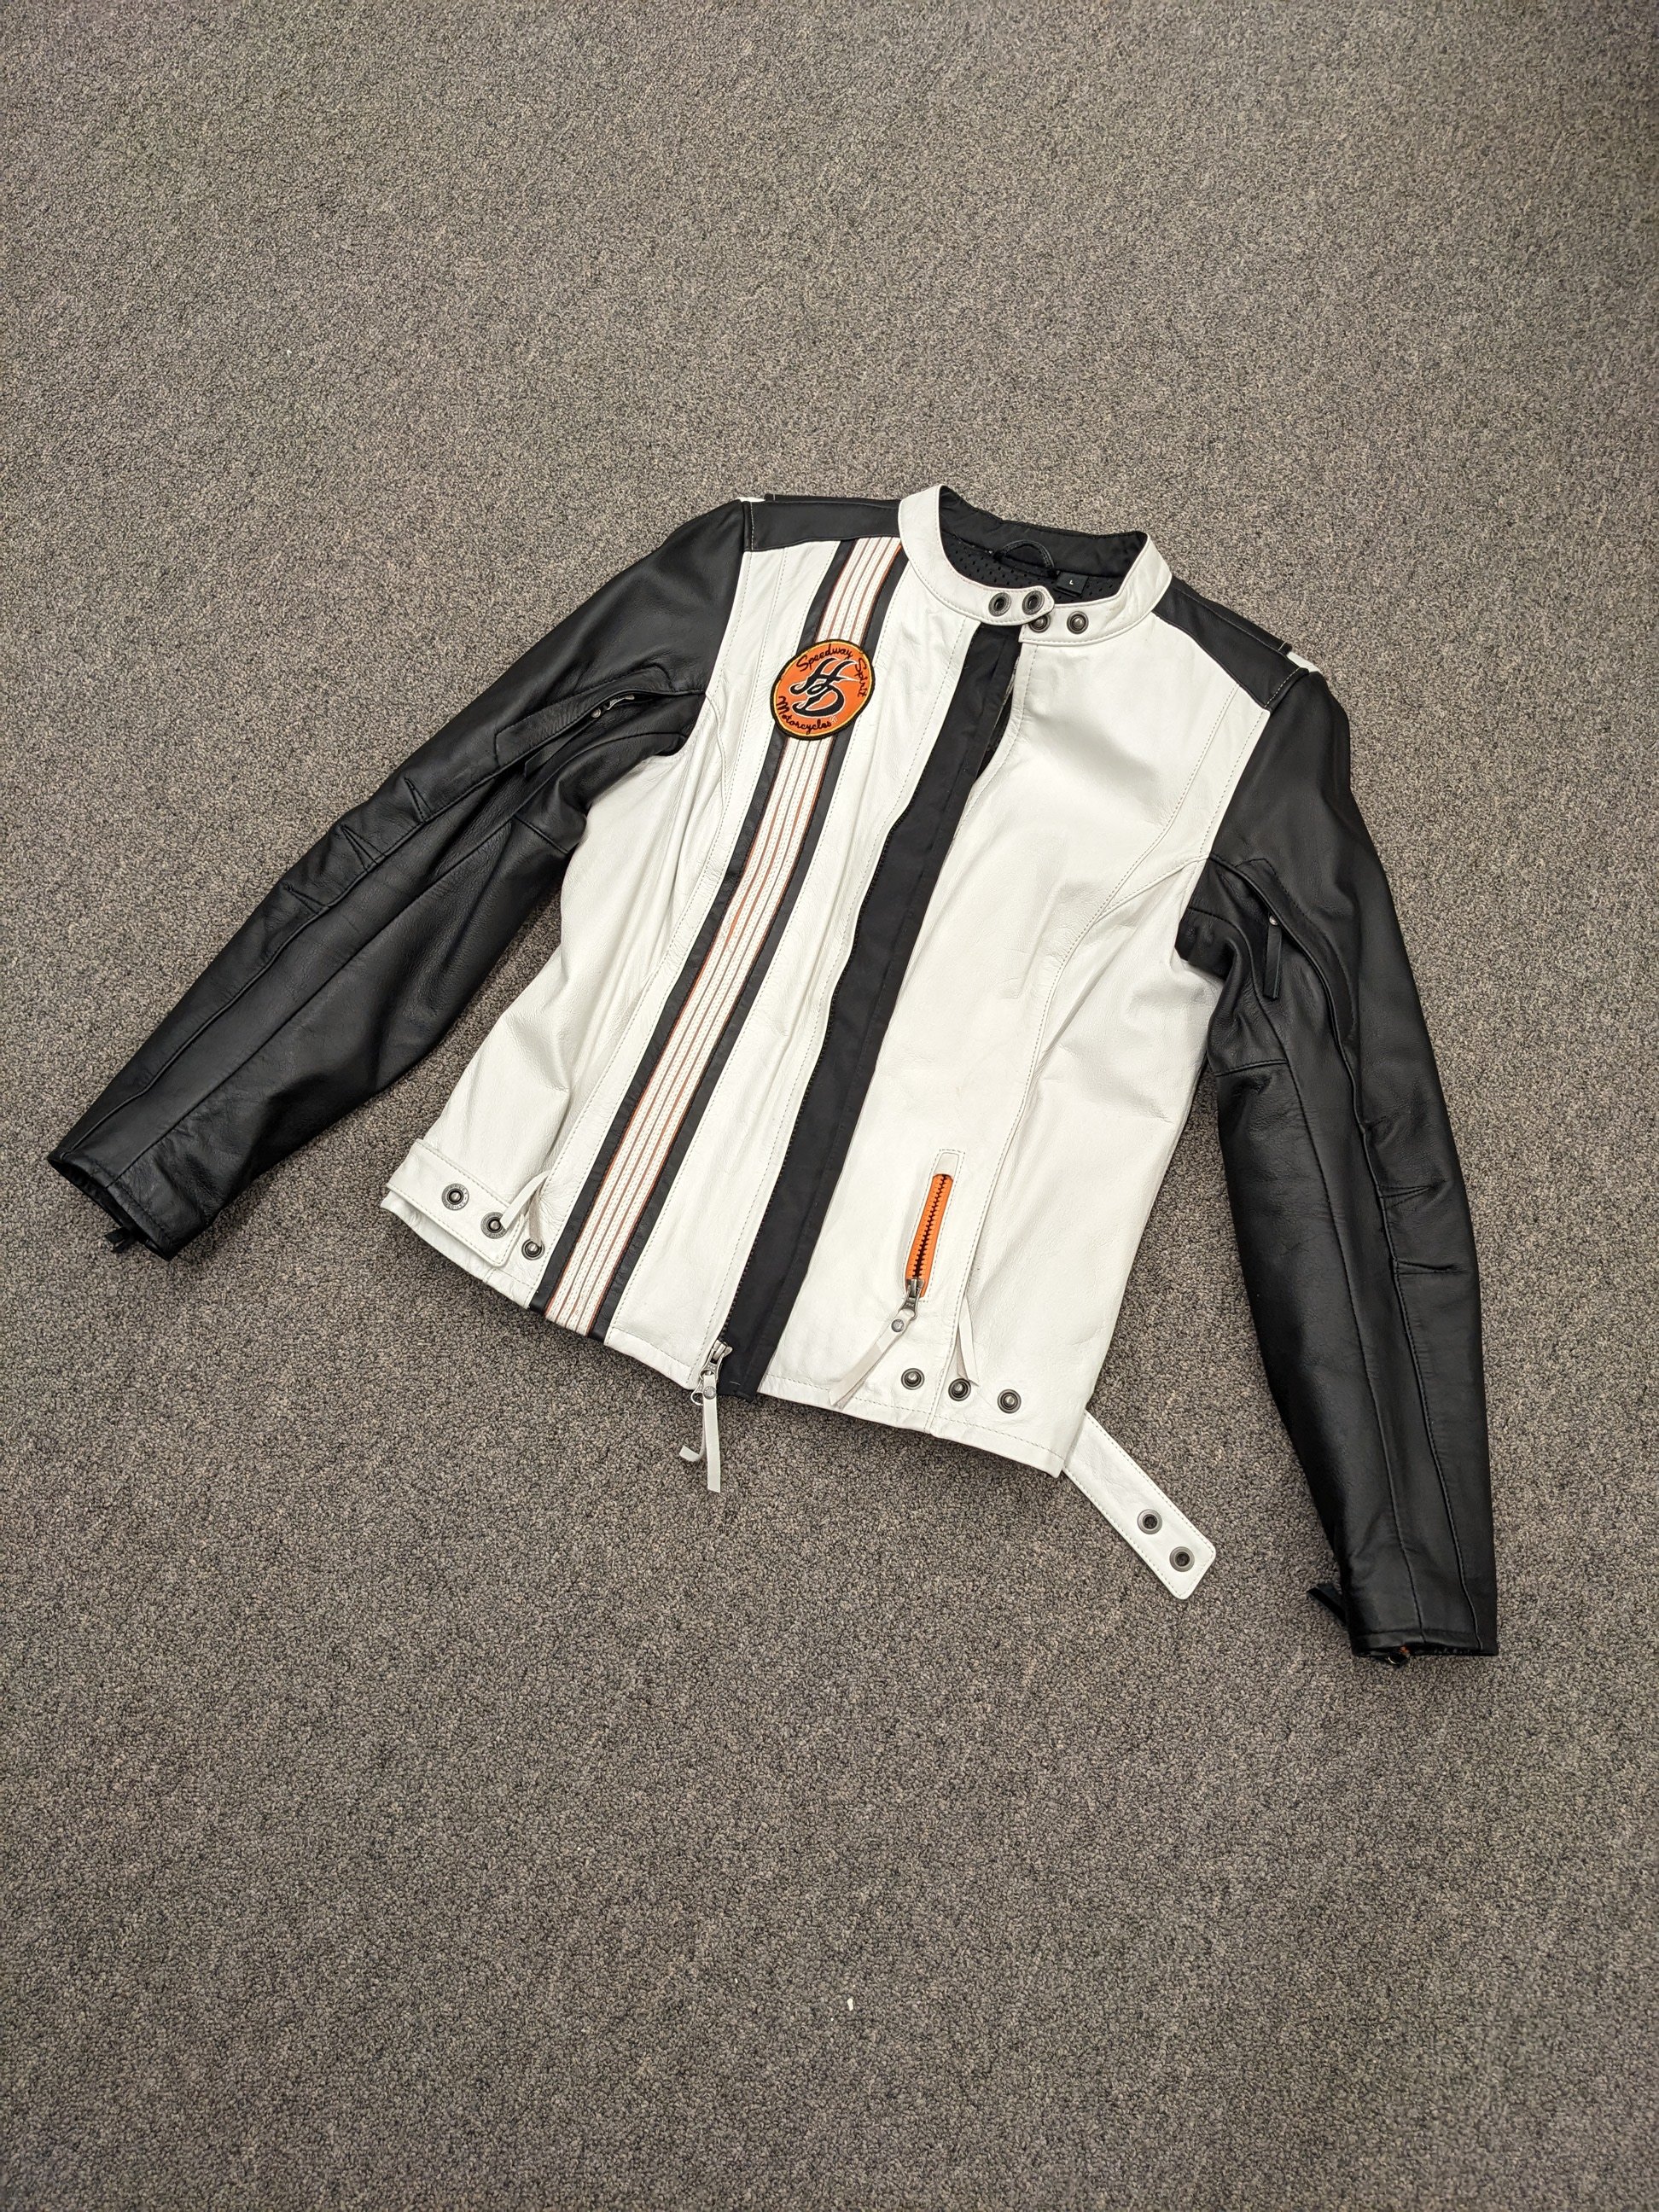 Harley Speedway Spirit Leather Jacket